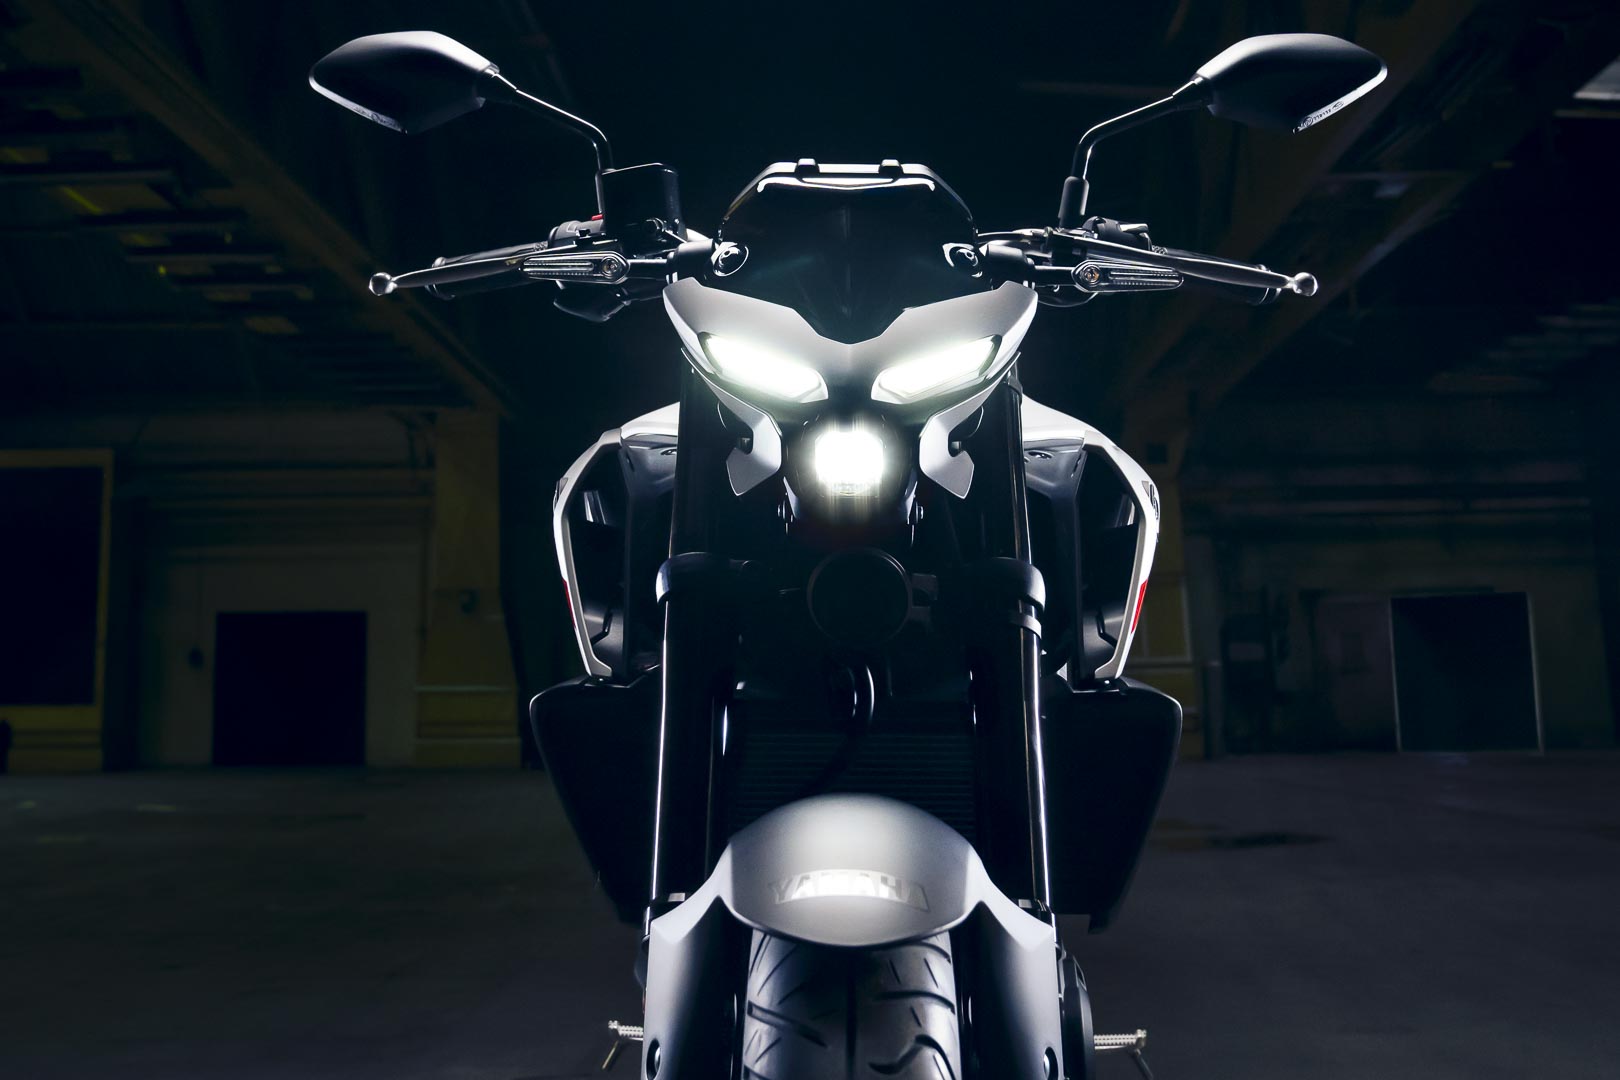 Мотоцикл Yamaha Yamaha MT-03 2020 2020